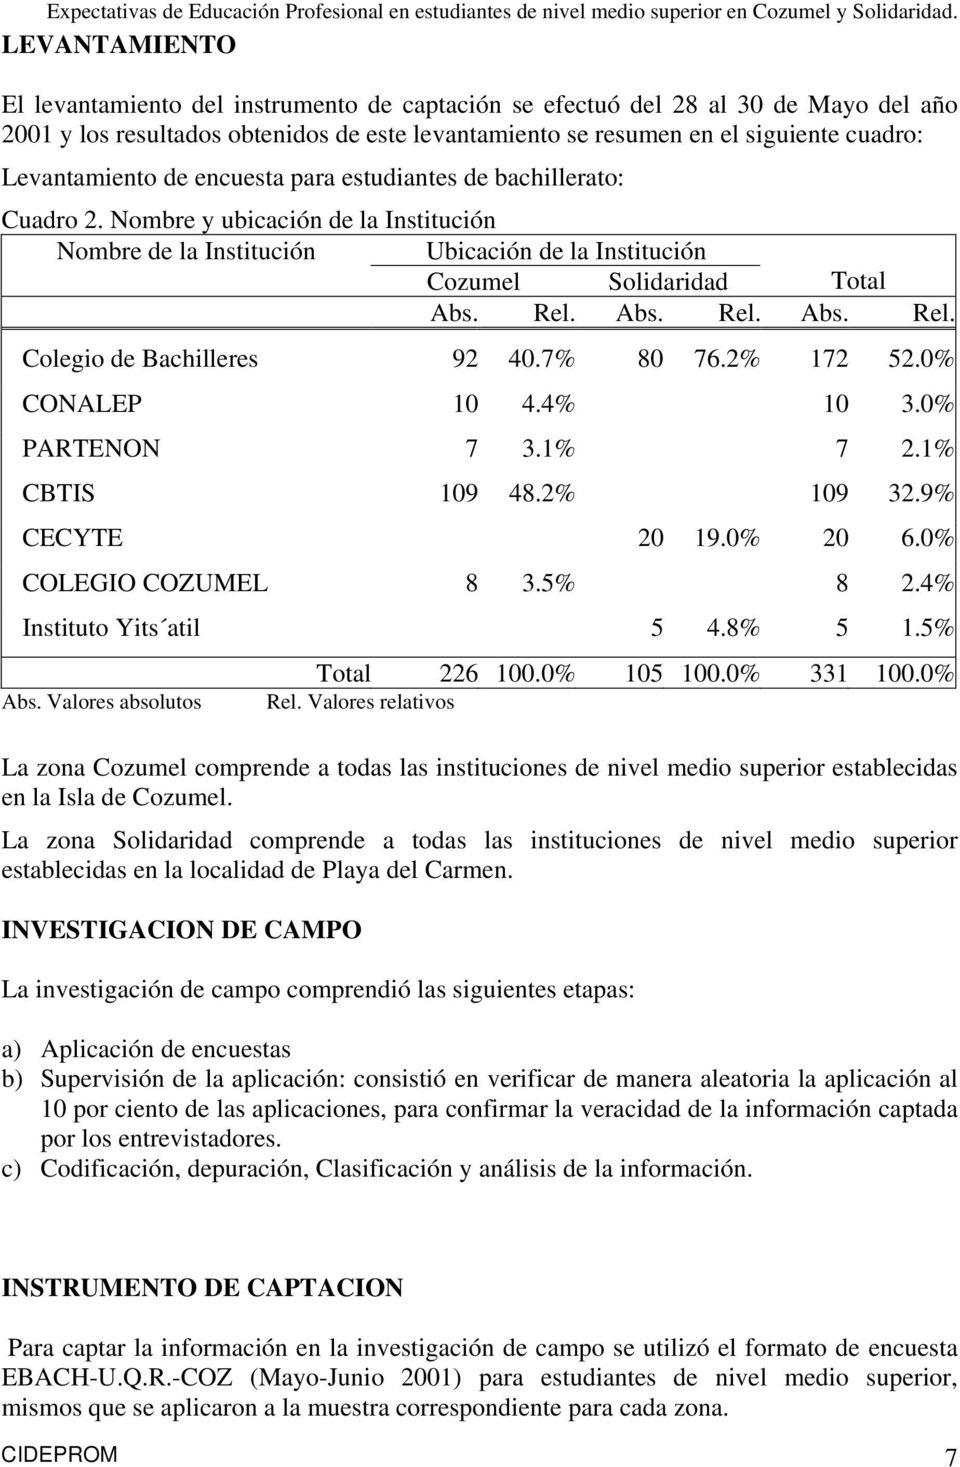 Abs. Rel. Abs. Rel. Colegio de Bachilleres 92 0.7% 80 76.2% 172 52.0% CONALEP 10.% 10 3.0% PARTENON 7 3.1% 7 2.1% CBTIS 109 8.2% 109 32.9% CECYTE 20 19.0% 20 6.0% COLEGIO COZUMEL 8 3.5% 8 2.